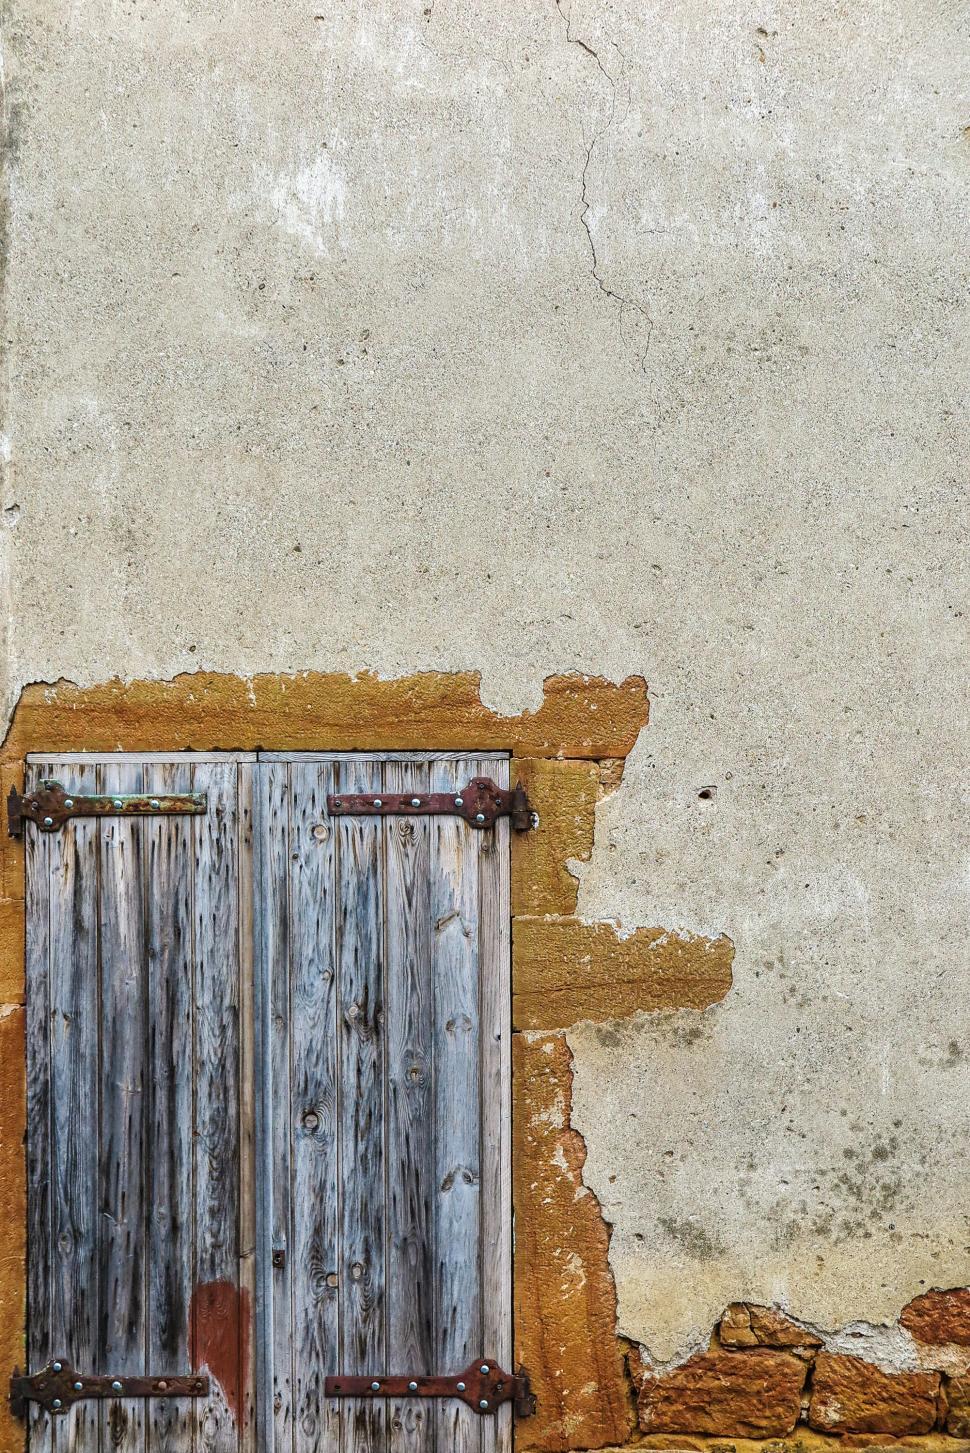 Free Image of Wooden door in wall 